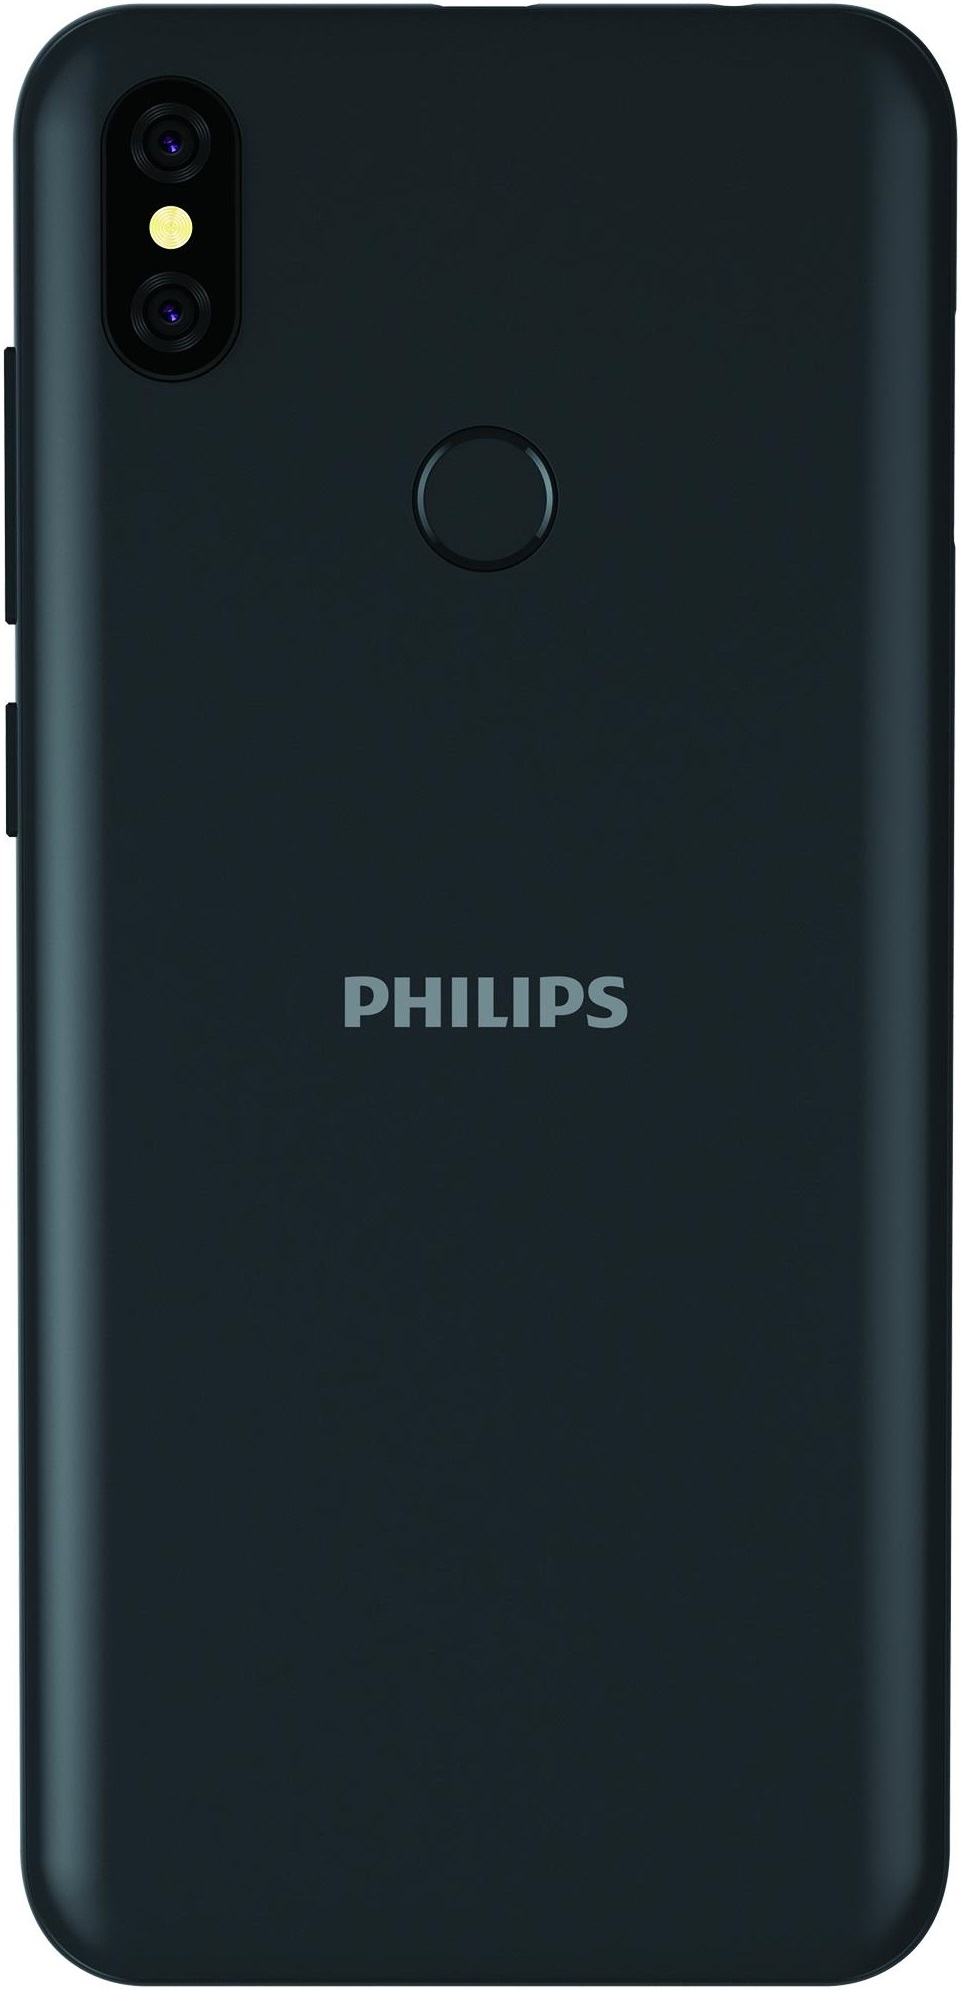 Philips S397